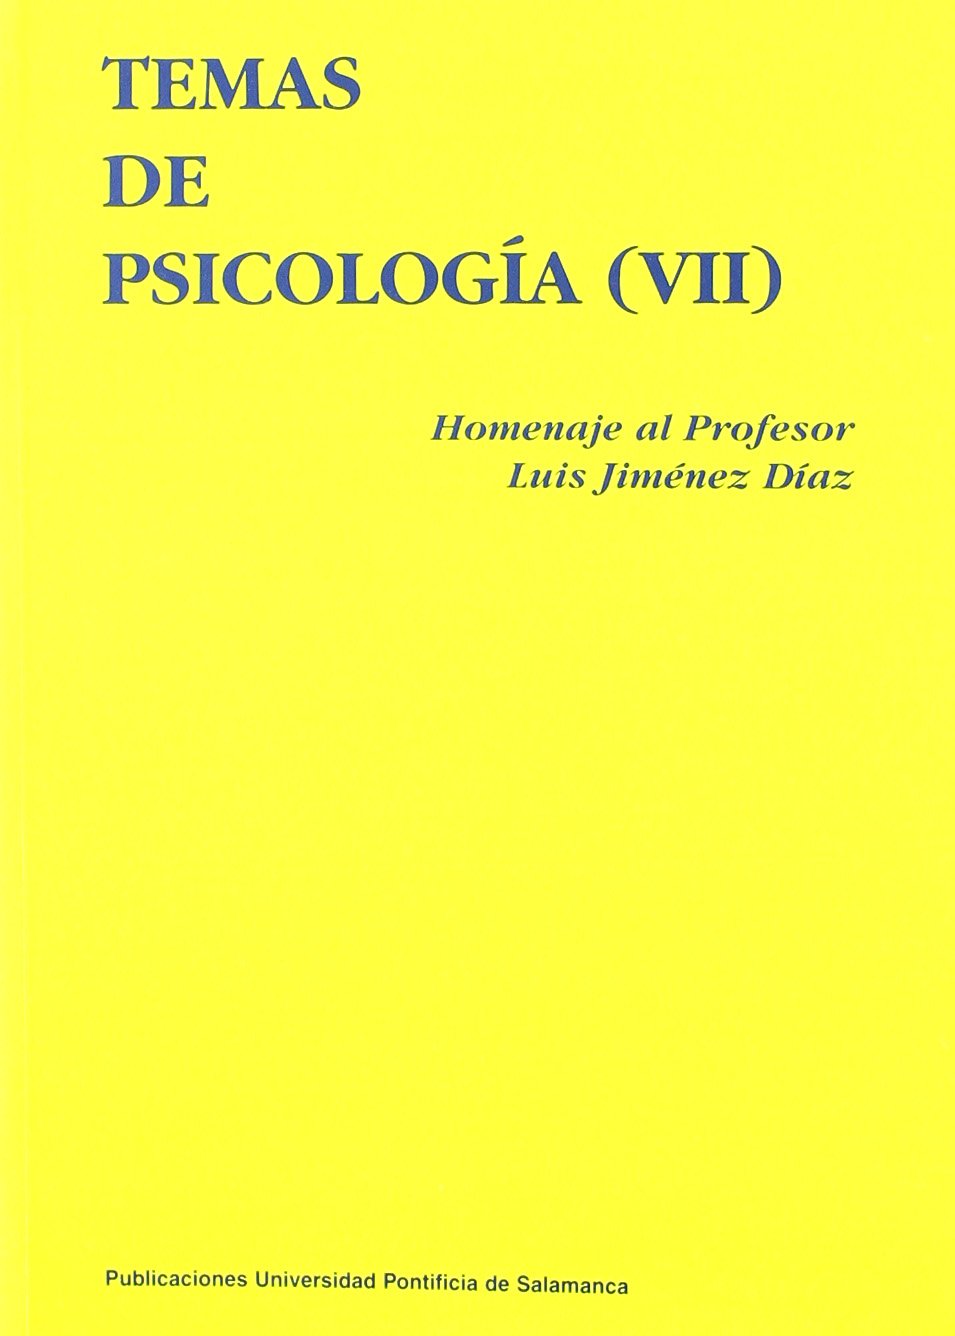 Imagen de portada del libro Temas de psicología (VII)